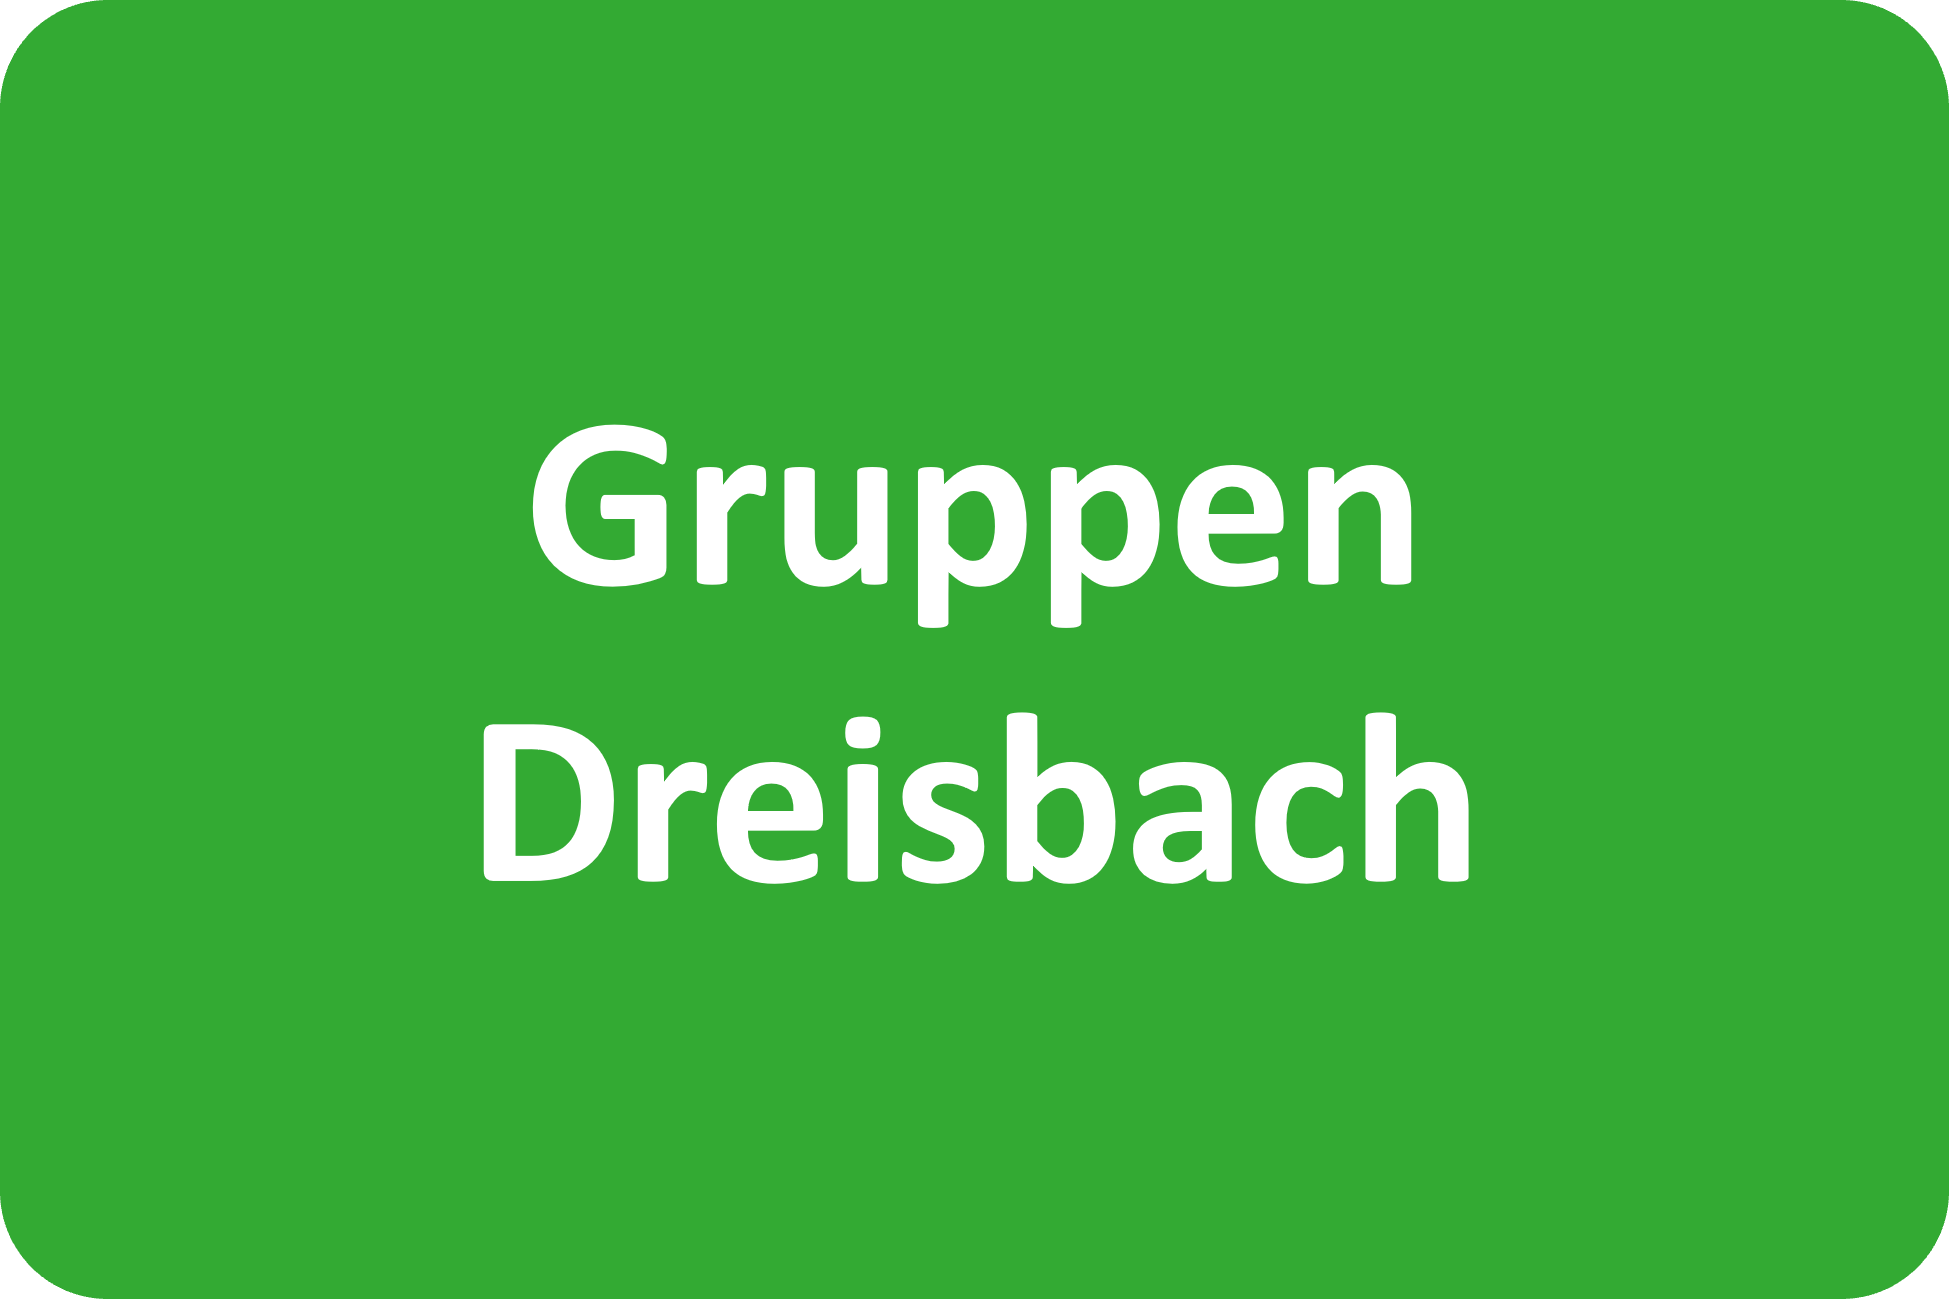 Gruppen in der Dreisbach